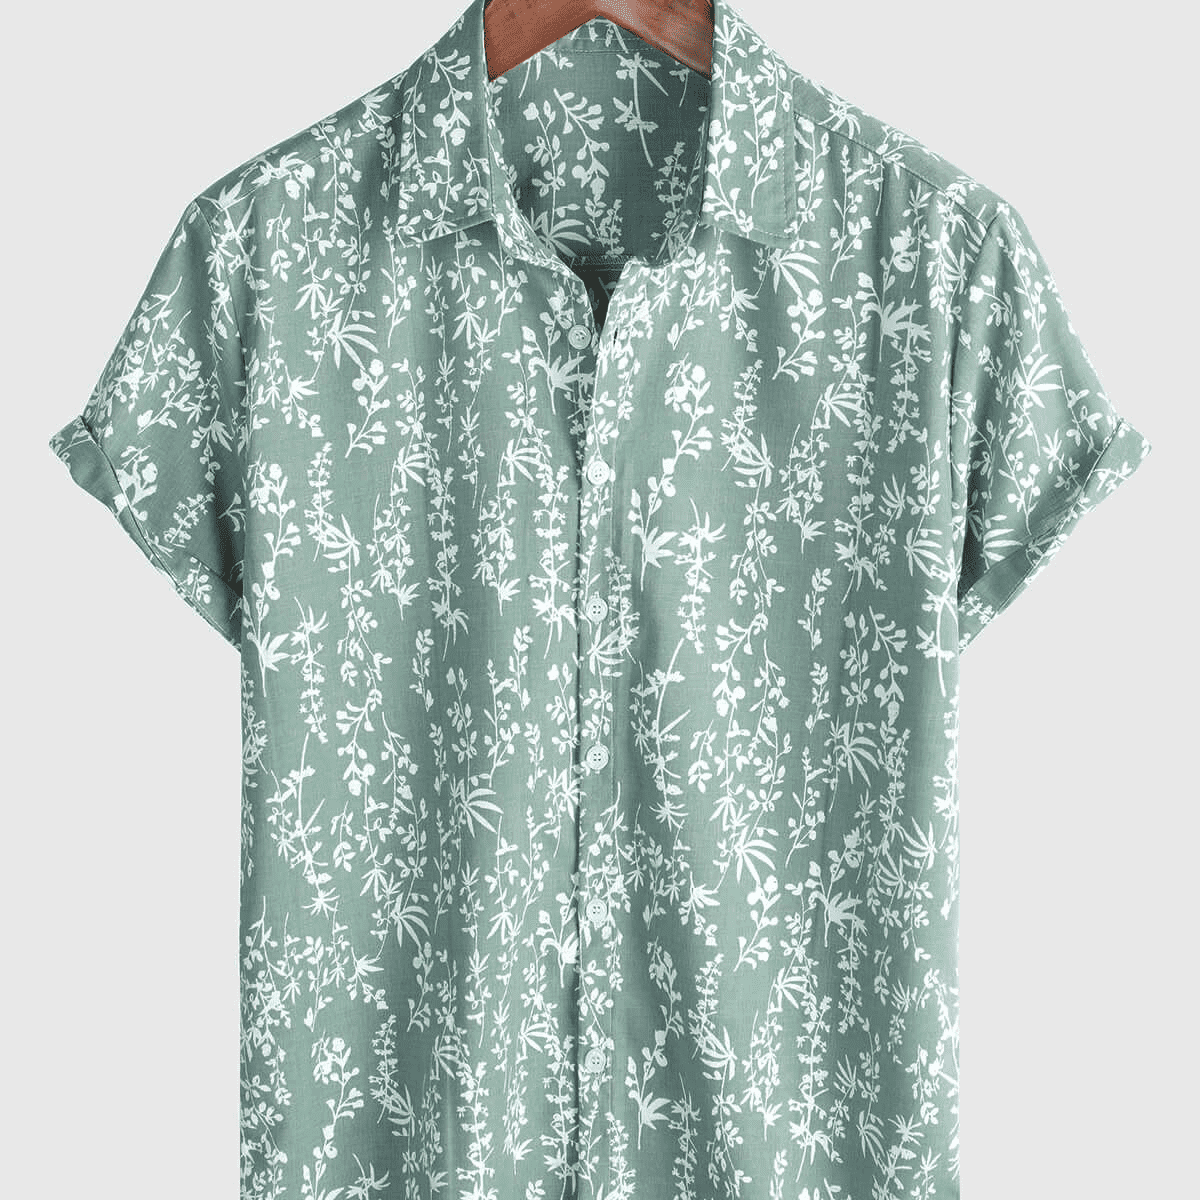 Men's Green Hawaiian Summer Floral Short Sleeve Cotton Button Up Shirt